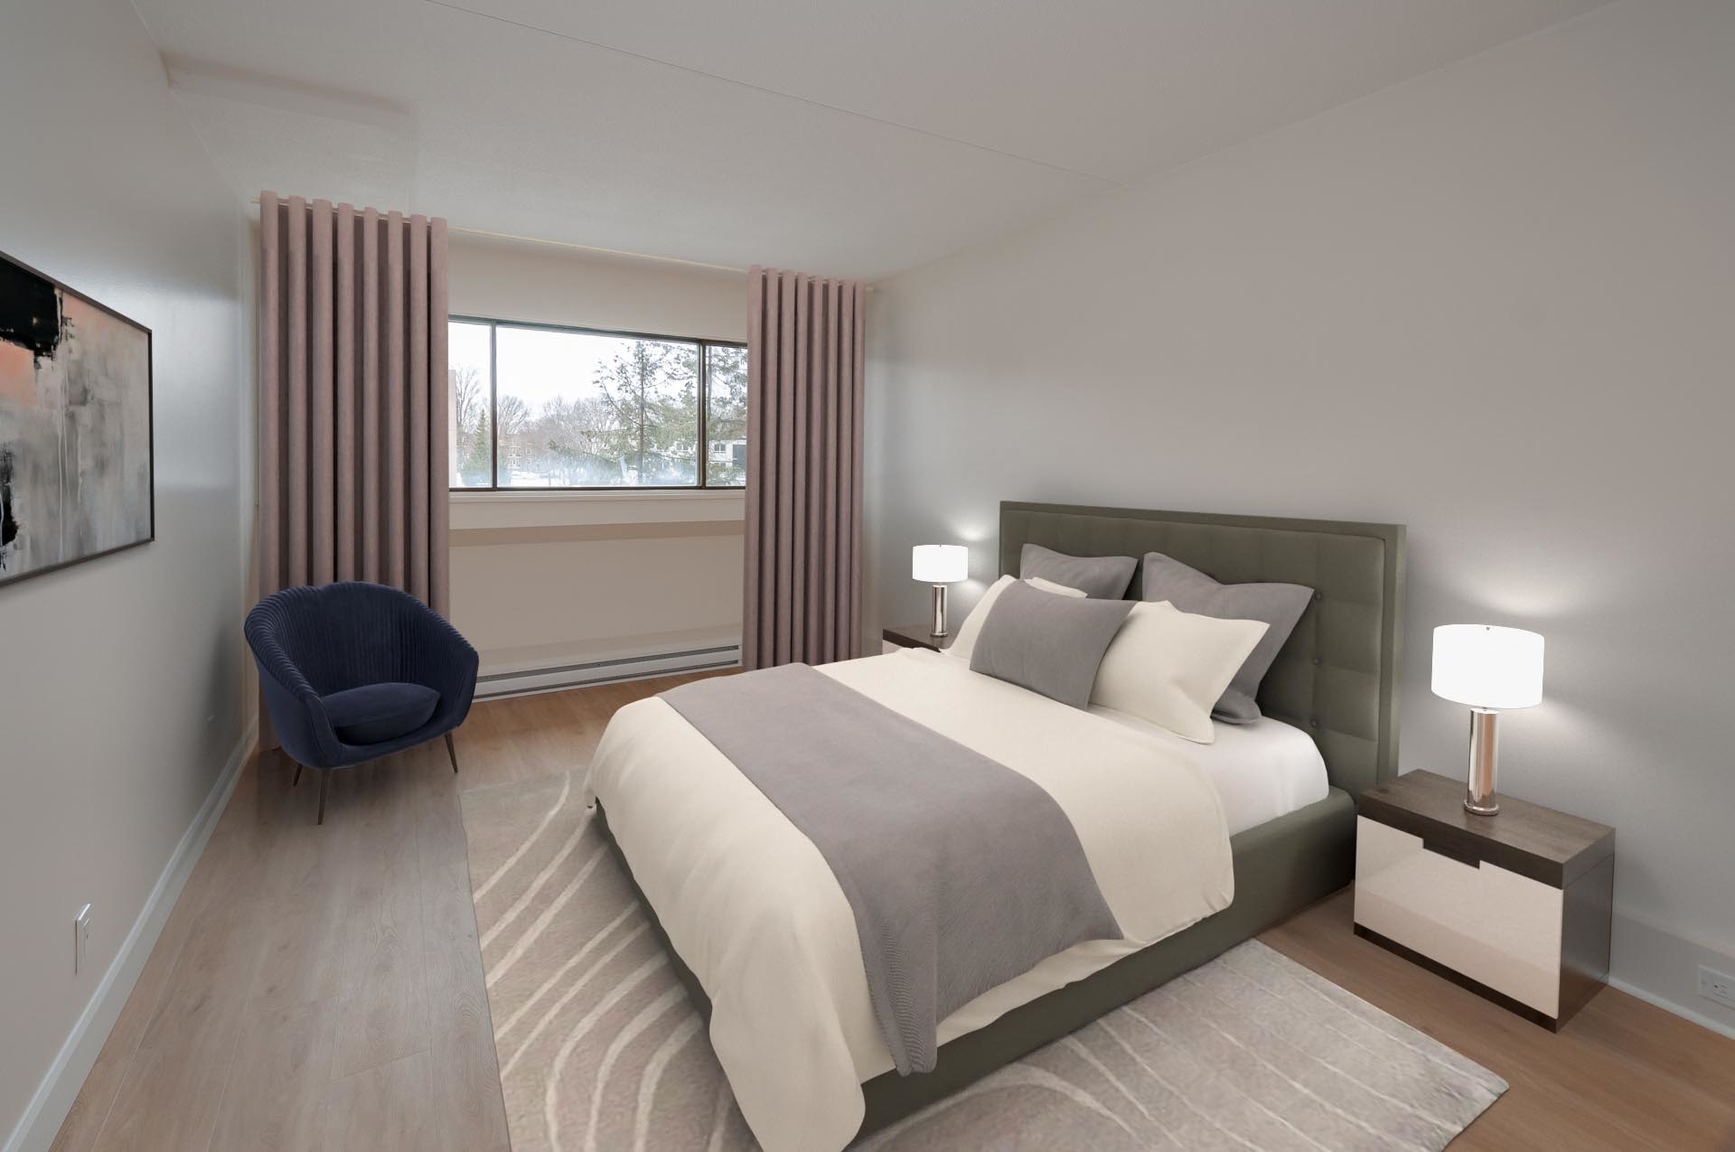 1 bedroom Apartments for rent in Quebec City at Les Jardins de Merici - Photo 18 - RentQuebecApartments – L407121